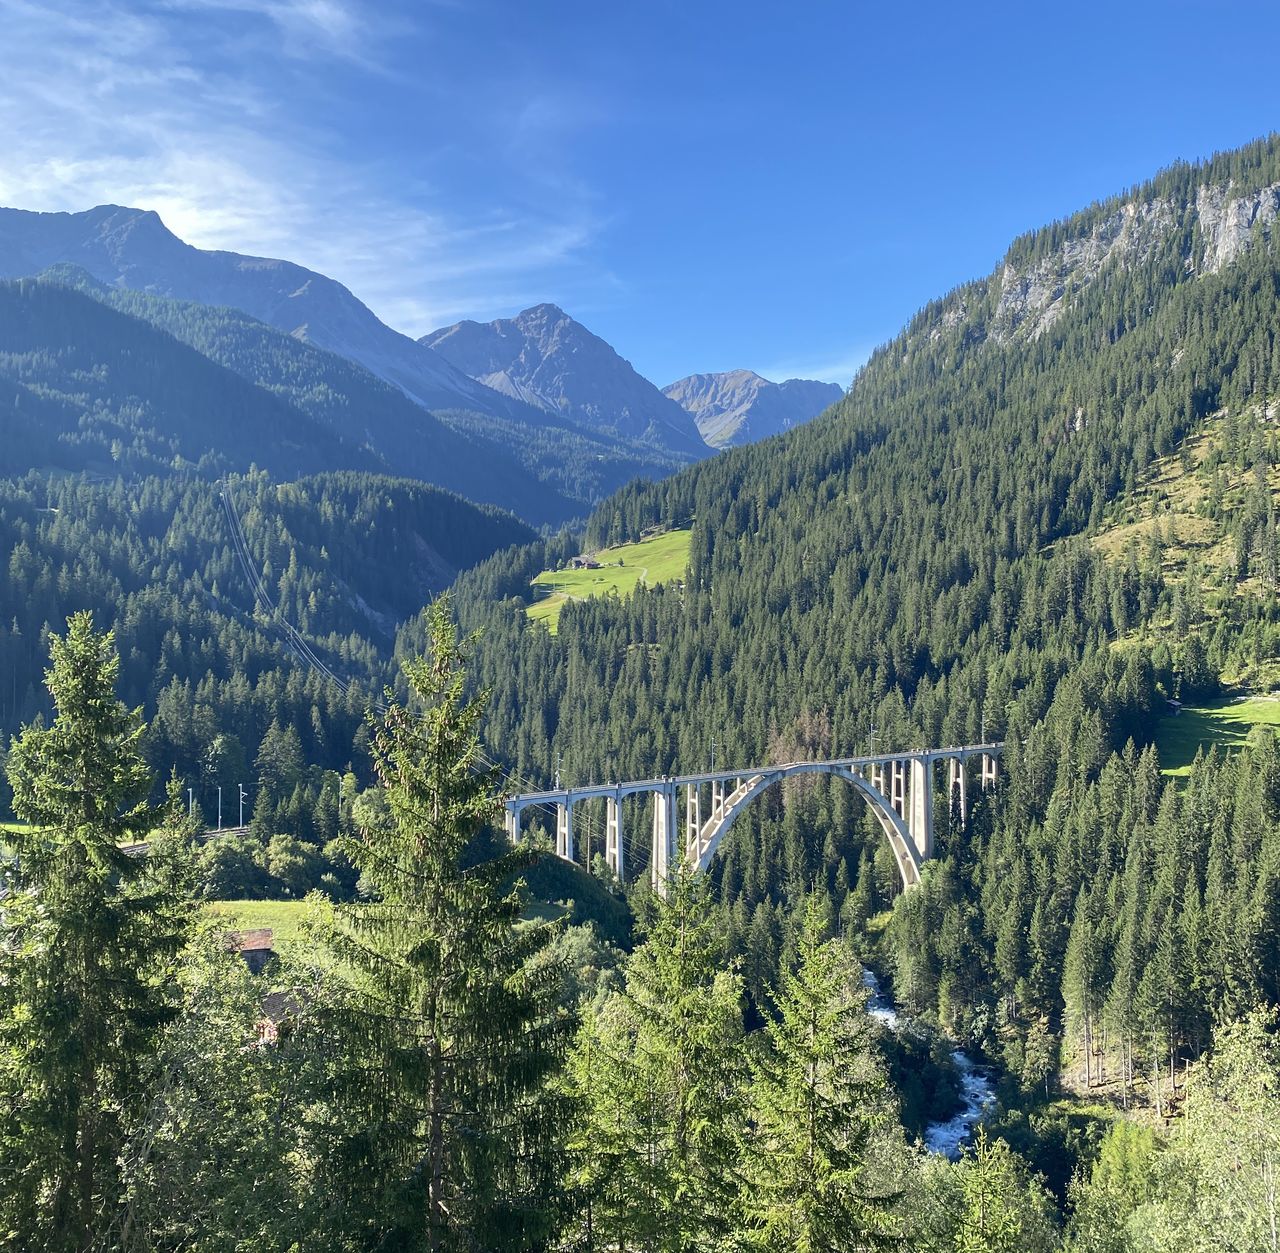 Podróż kamperem po Szwajcarii – Arosa